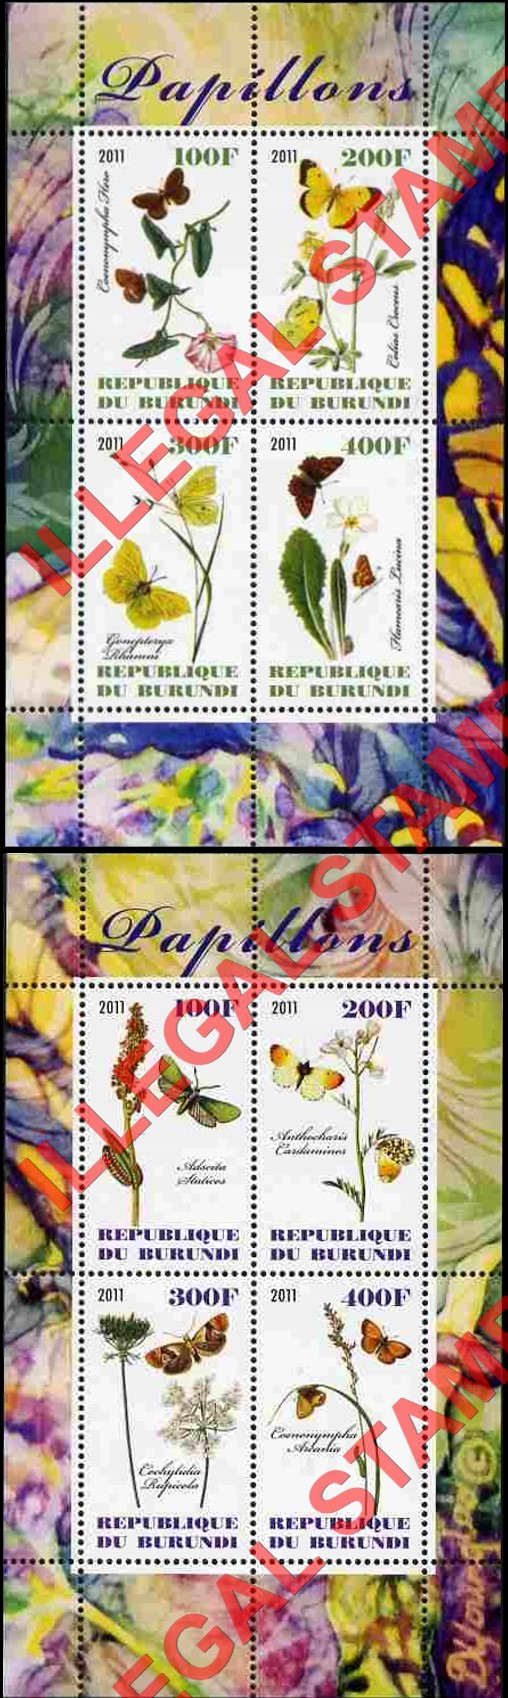 Burundi 2011 Butterflies Counterfeit Illegal Stamp Souvenir Sheets of 4 (Part 1)